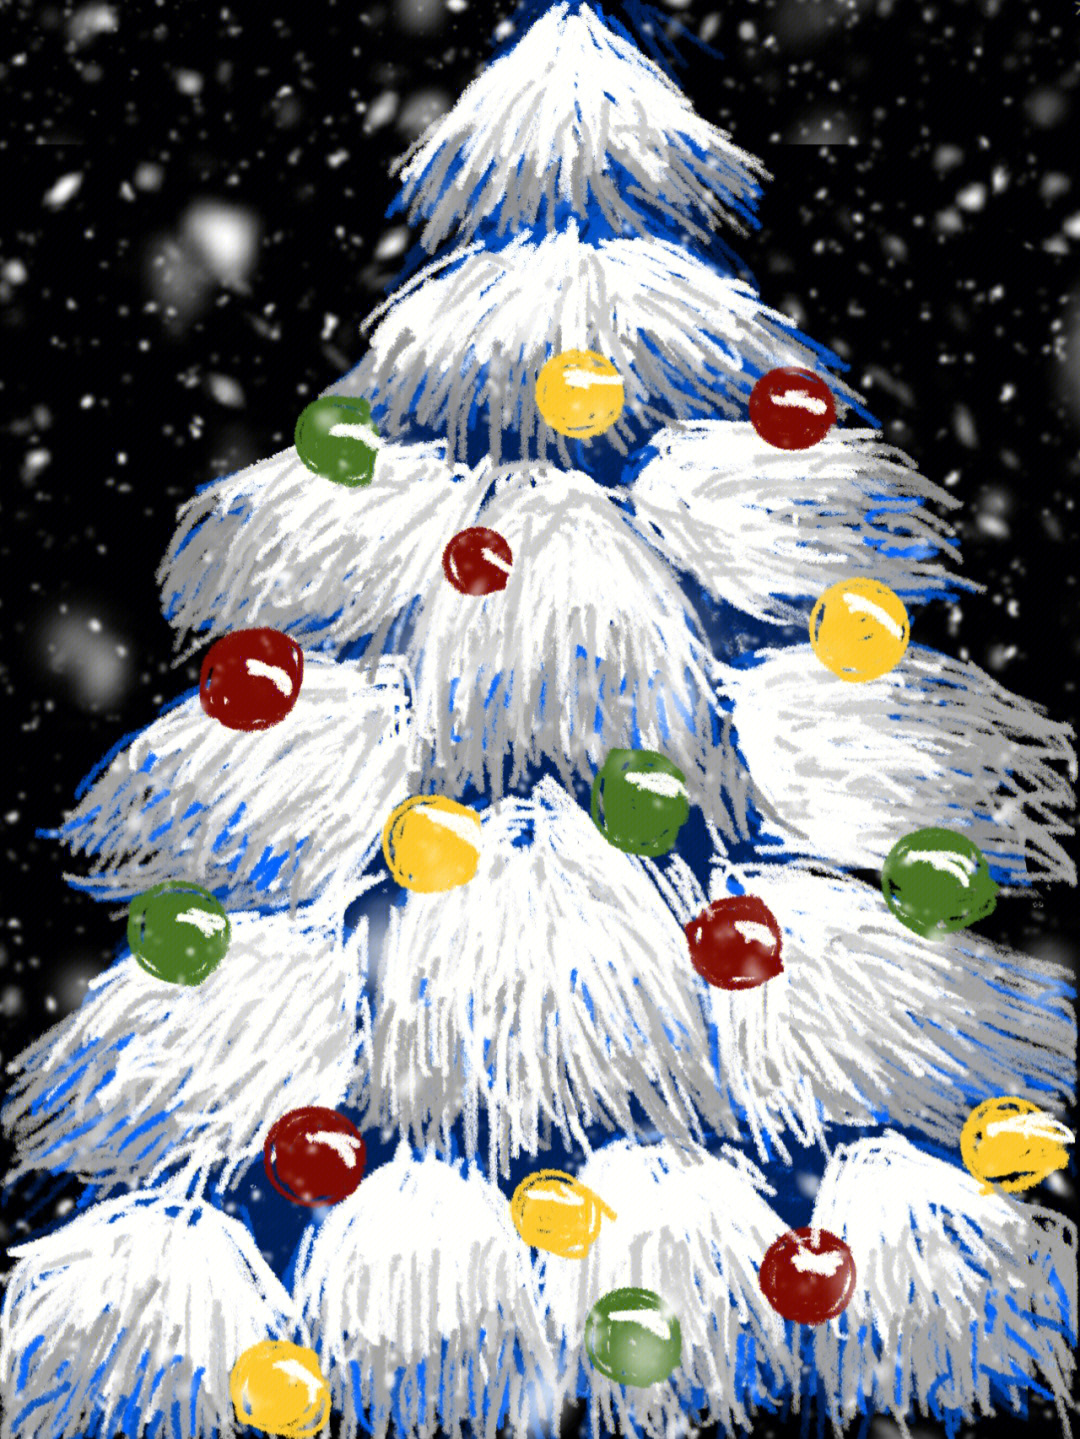 简单易画的手机版圣诞树来啦90大家快收藏画起来75157515